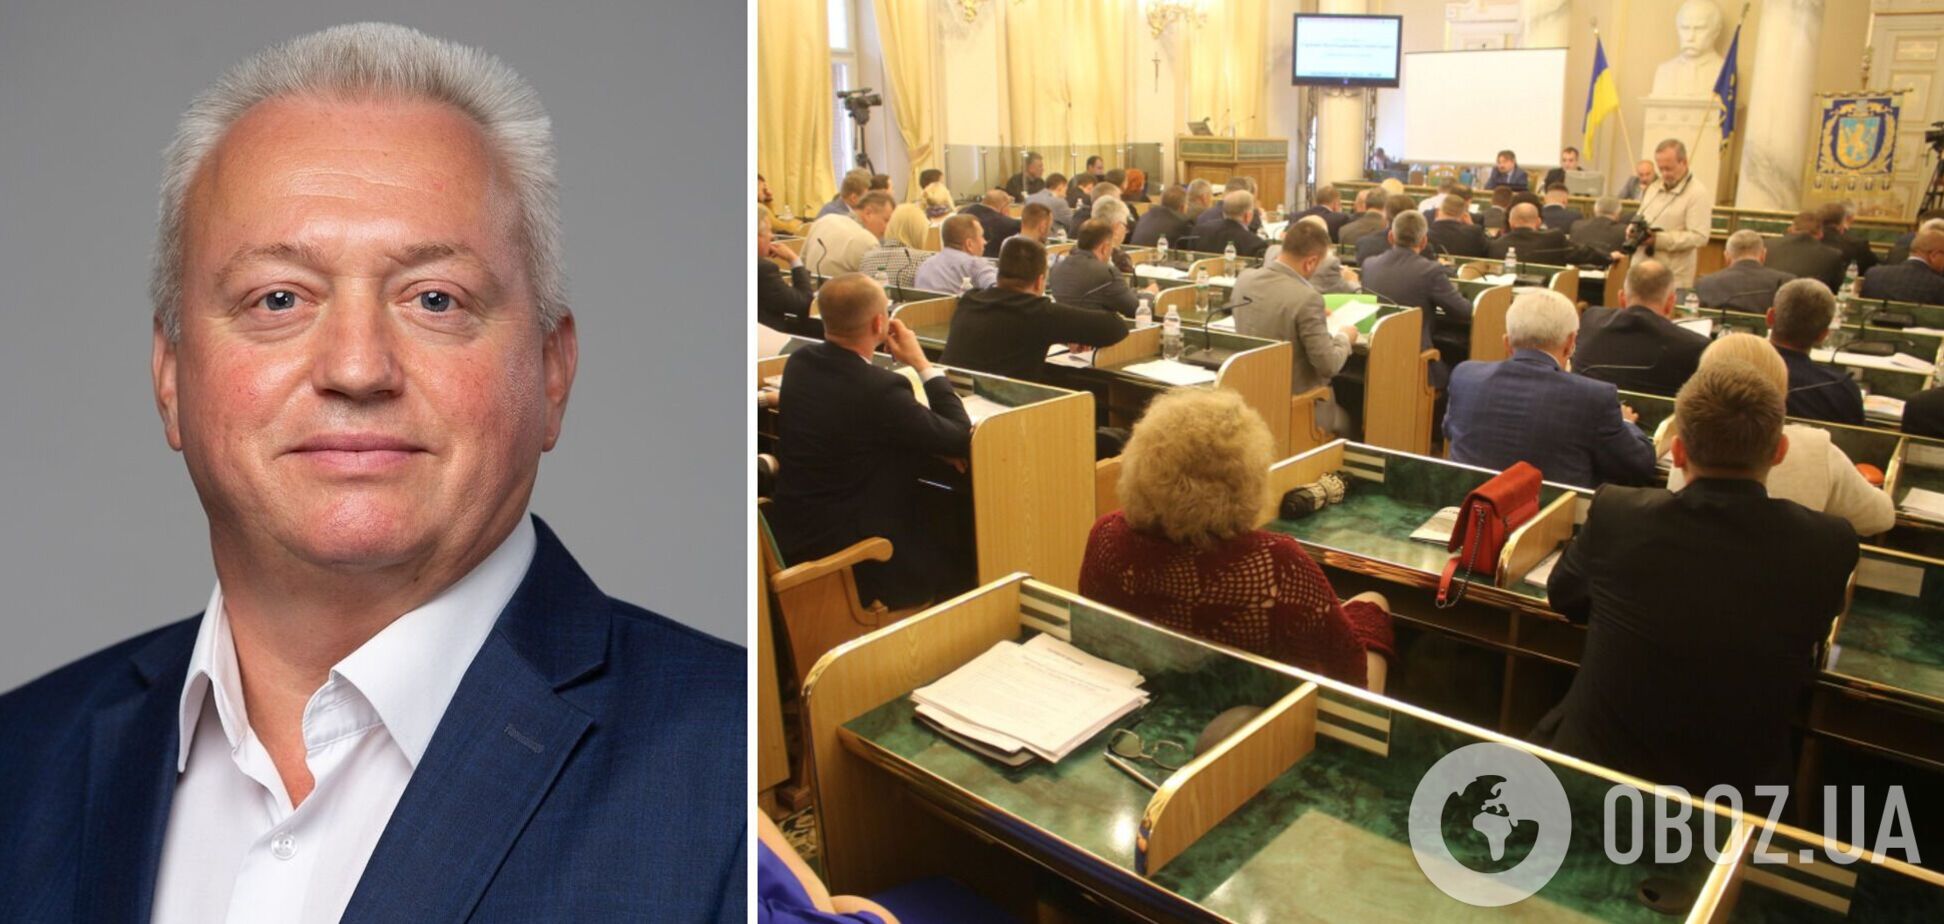 Депутат Львовского облсовета забыл название своей партии во время выступления. Видео